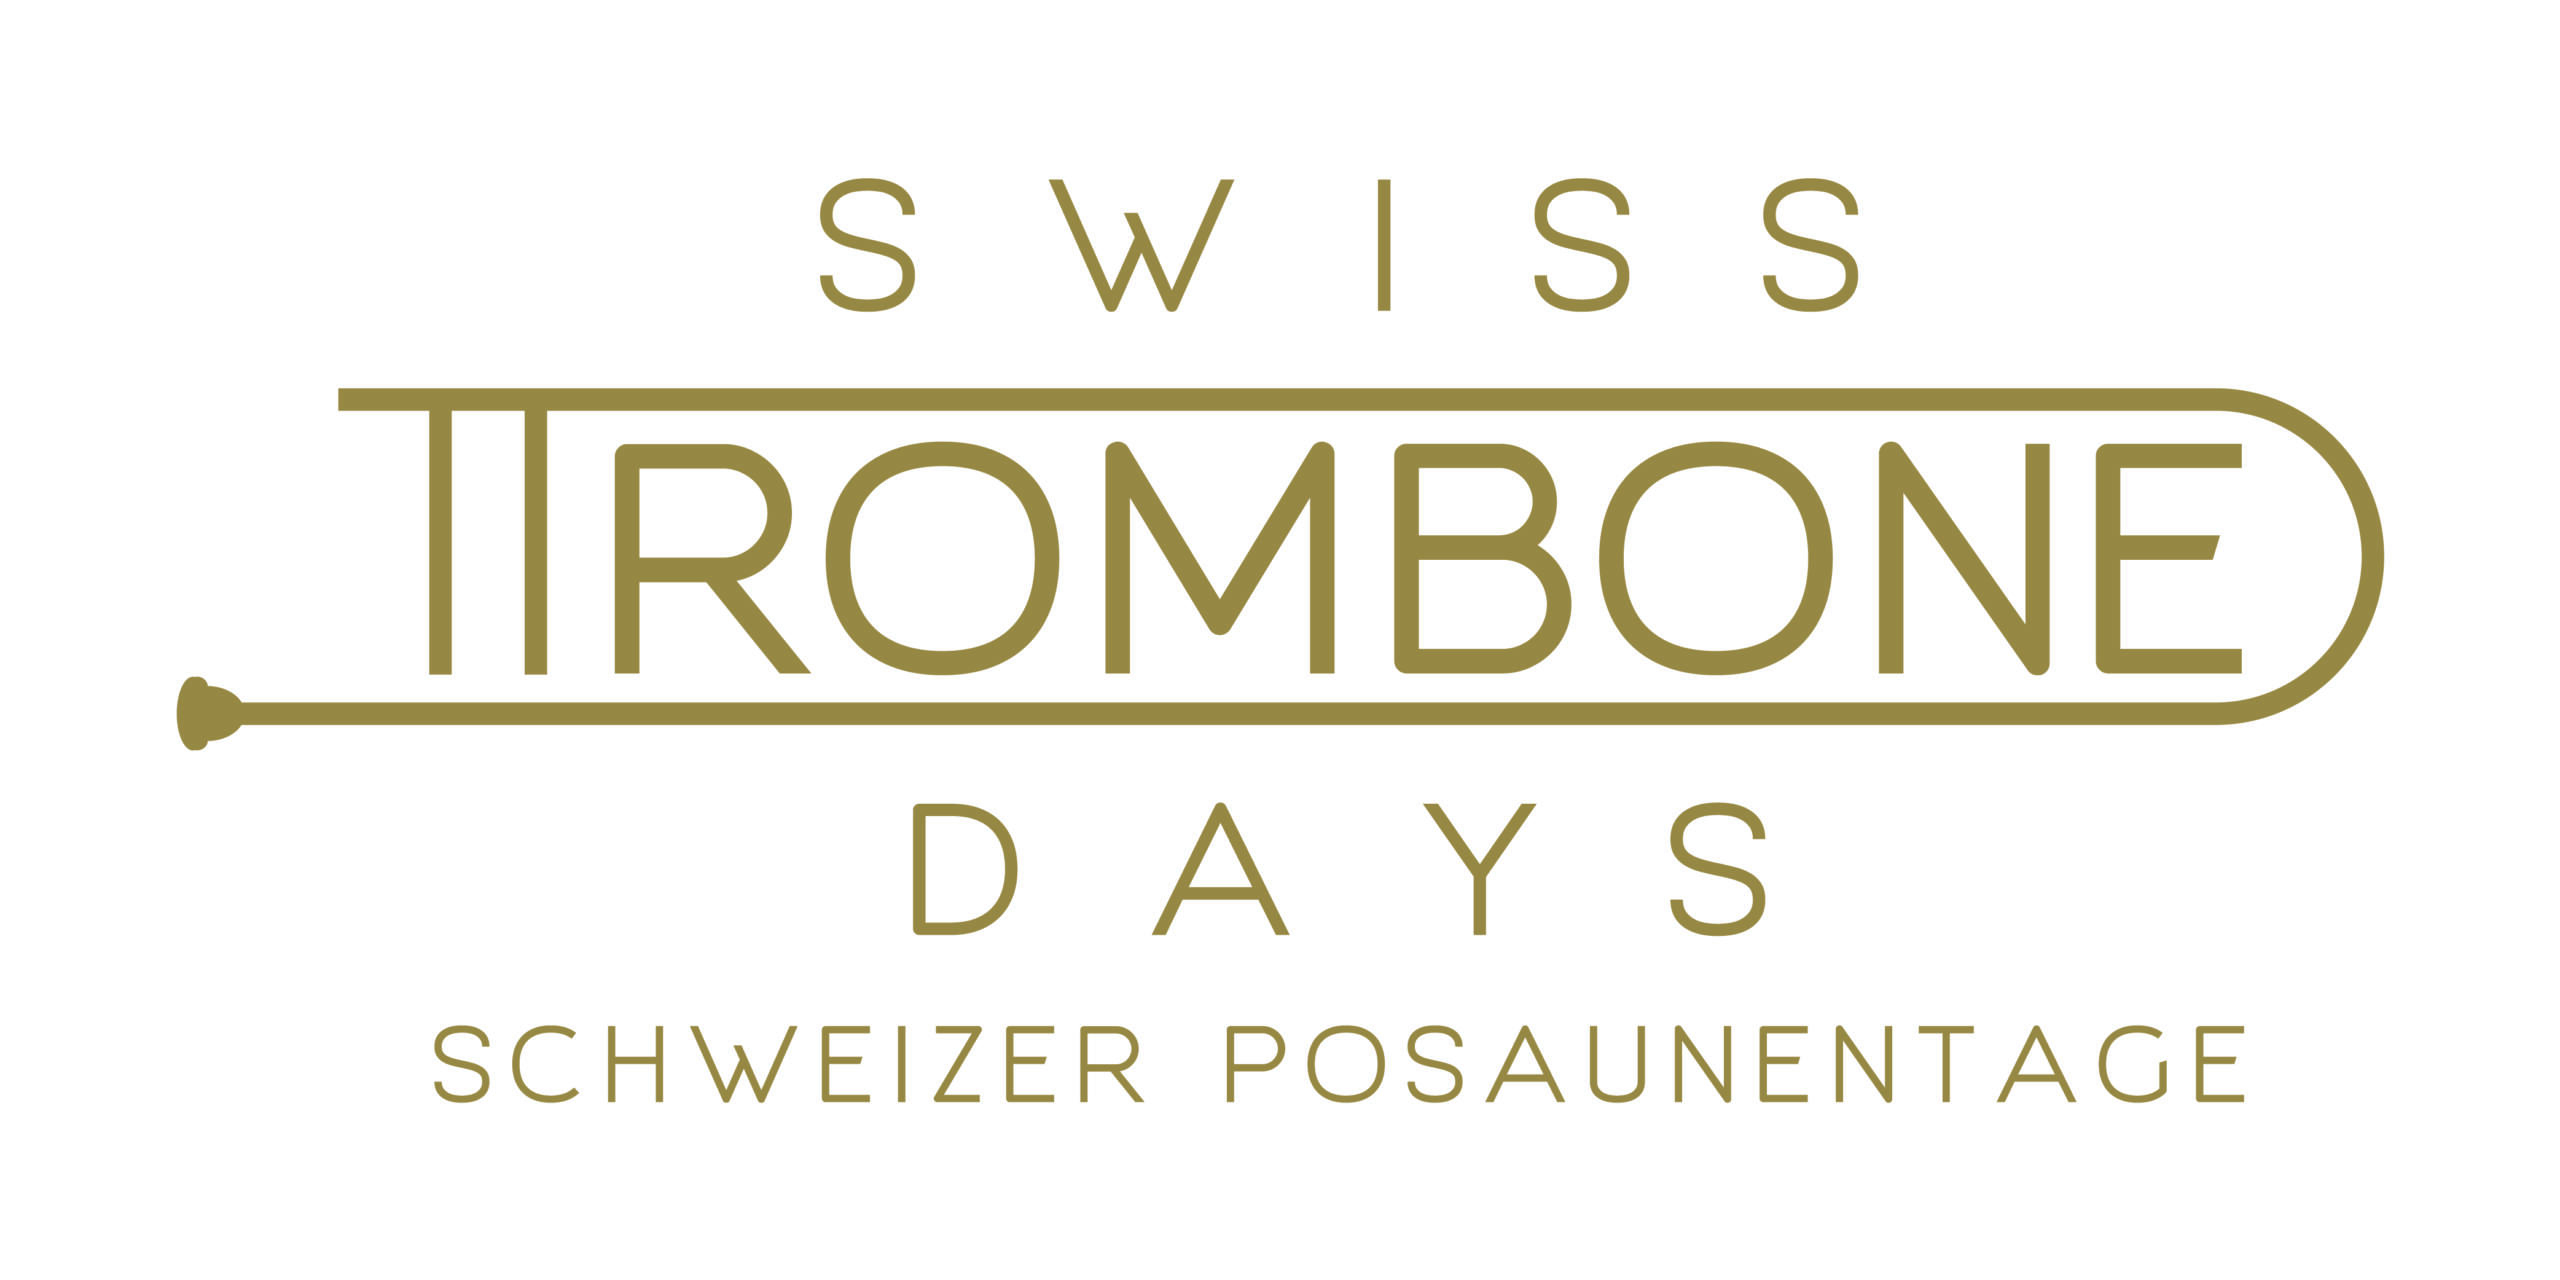 Logo SwissTrombone Days Schweizer Posaunentage